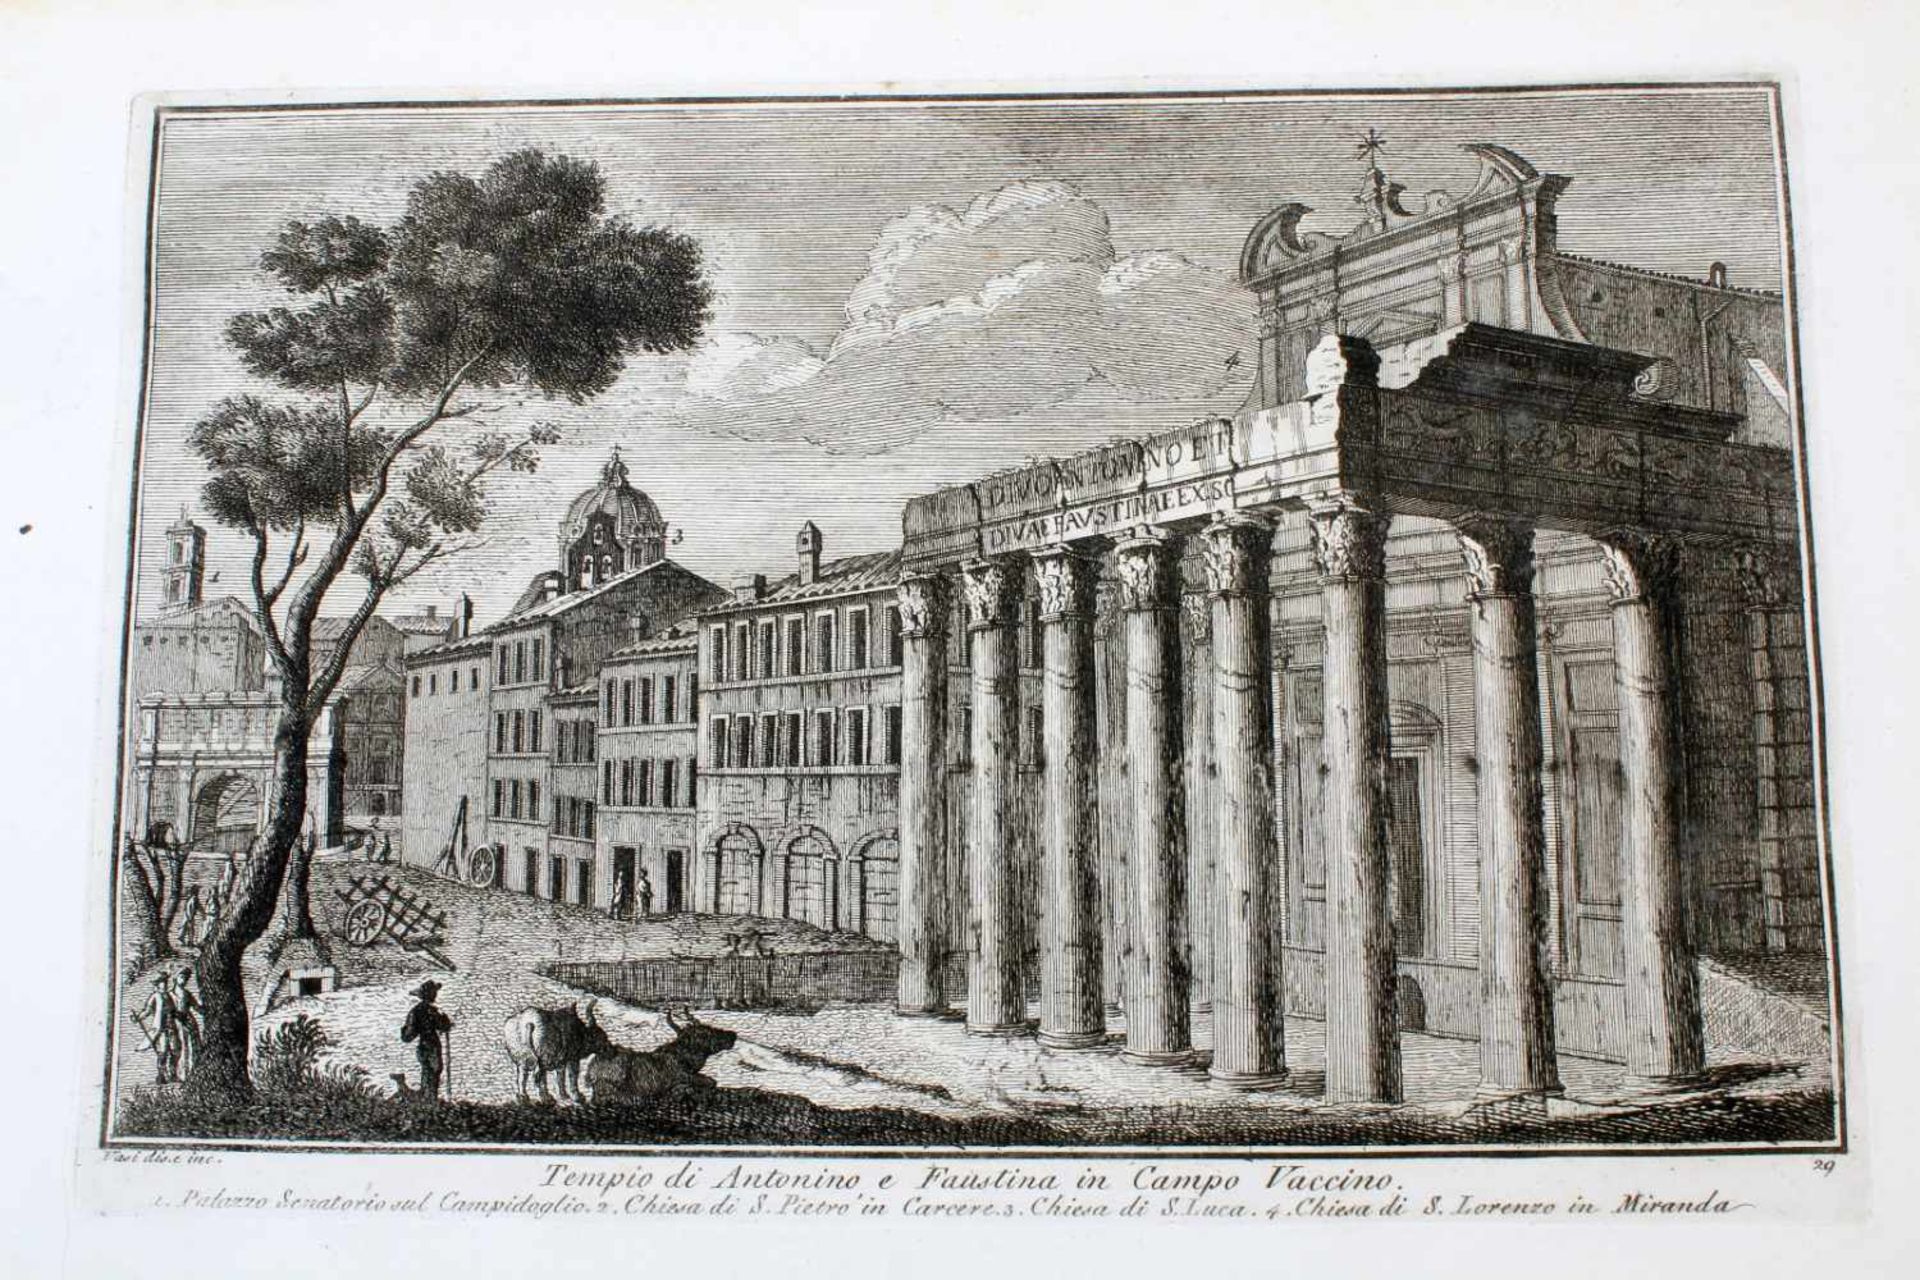 Roma - 64 Originalradierungen Ansichten von Rom - Giuseppe Vasi (1710 - 1782)Die Radierungen sind - Bild 34 aus 69